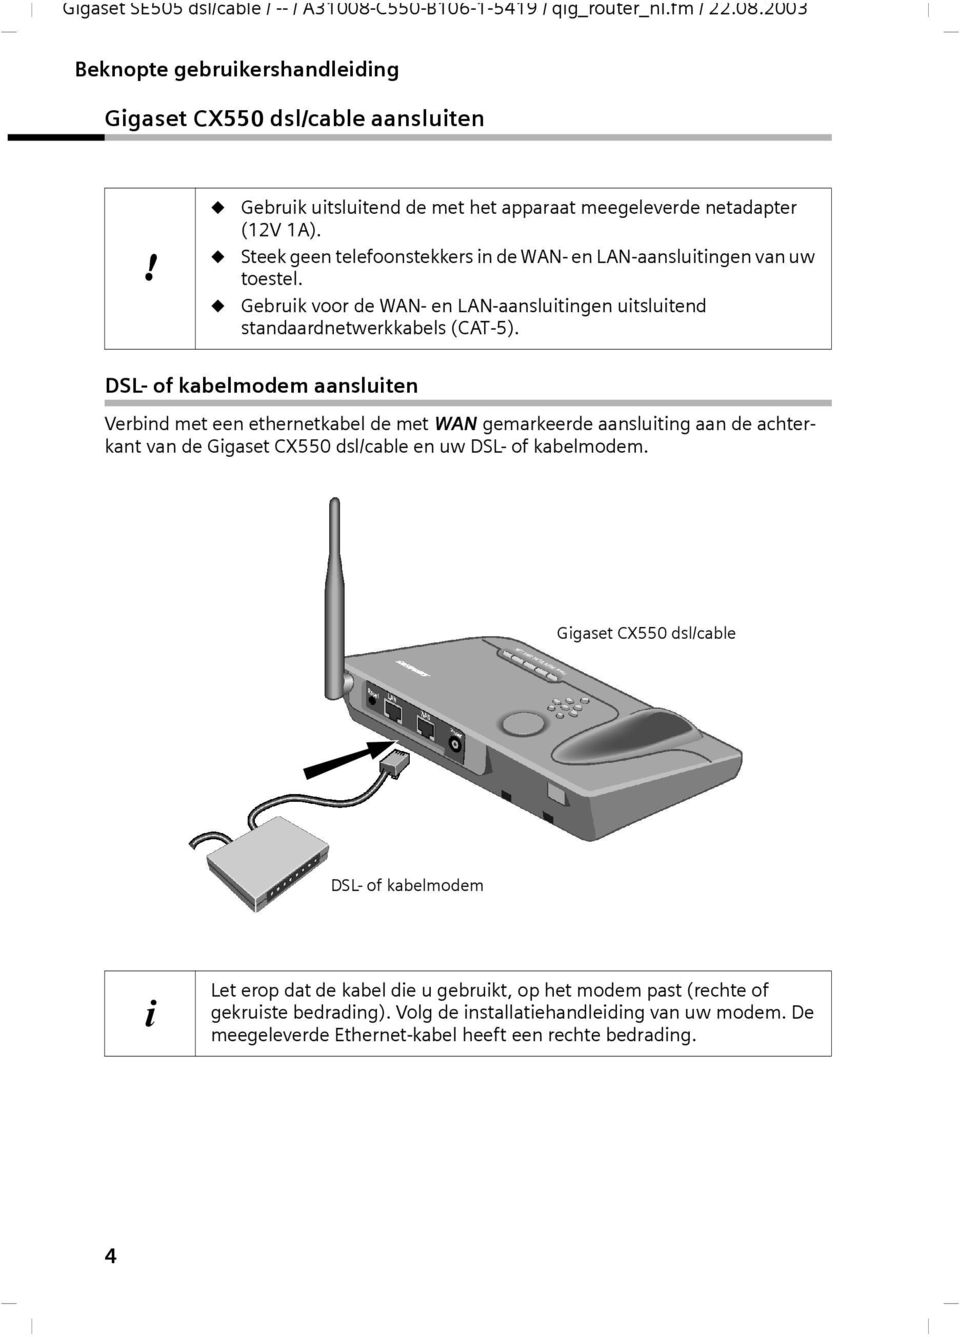 DSL- of kabelmodem aansluiten Verbind met een ethernetkabel de met WAN gemarkeerde aansluiting aan de achterkant van de Gigaset CX550 dsl/cable en uw DSL- of kabelmodem.